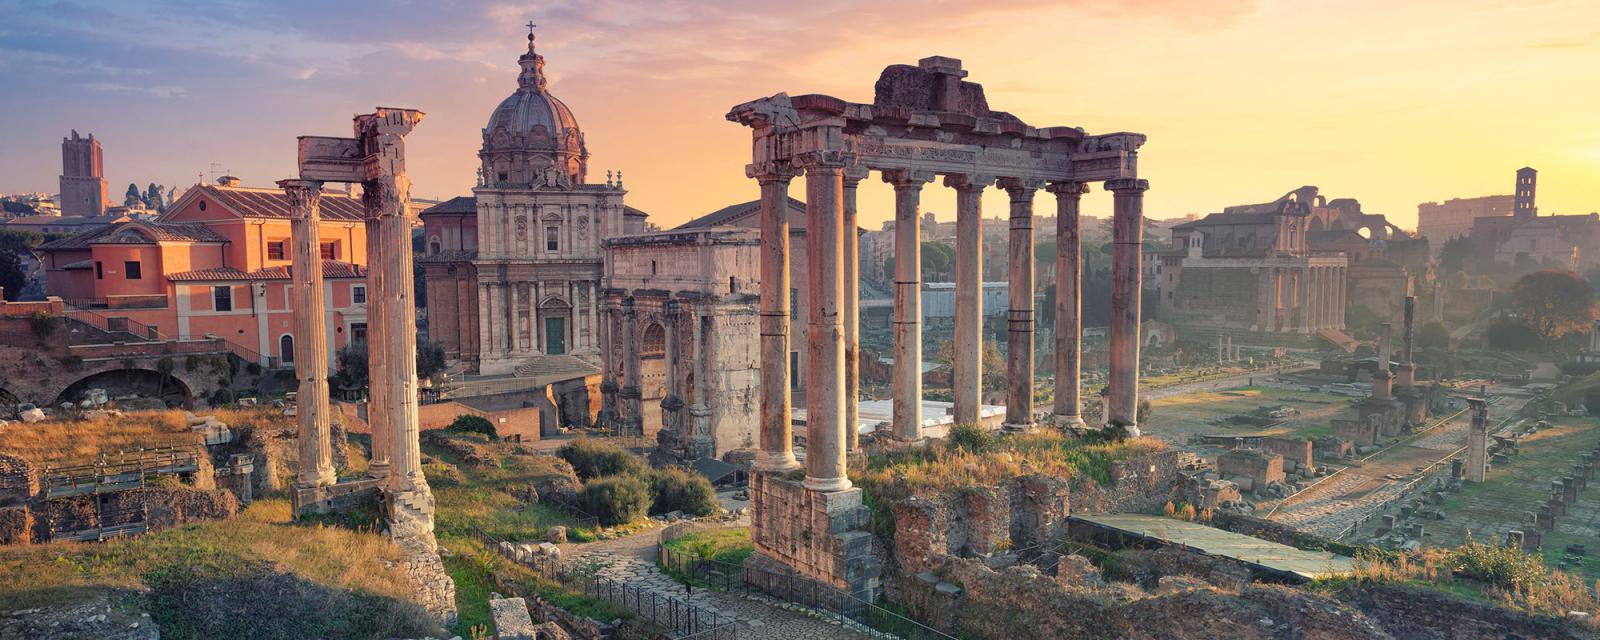 Gezapt: Rome | Alles wat je moet weten voor jouw stedentrip 